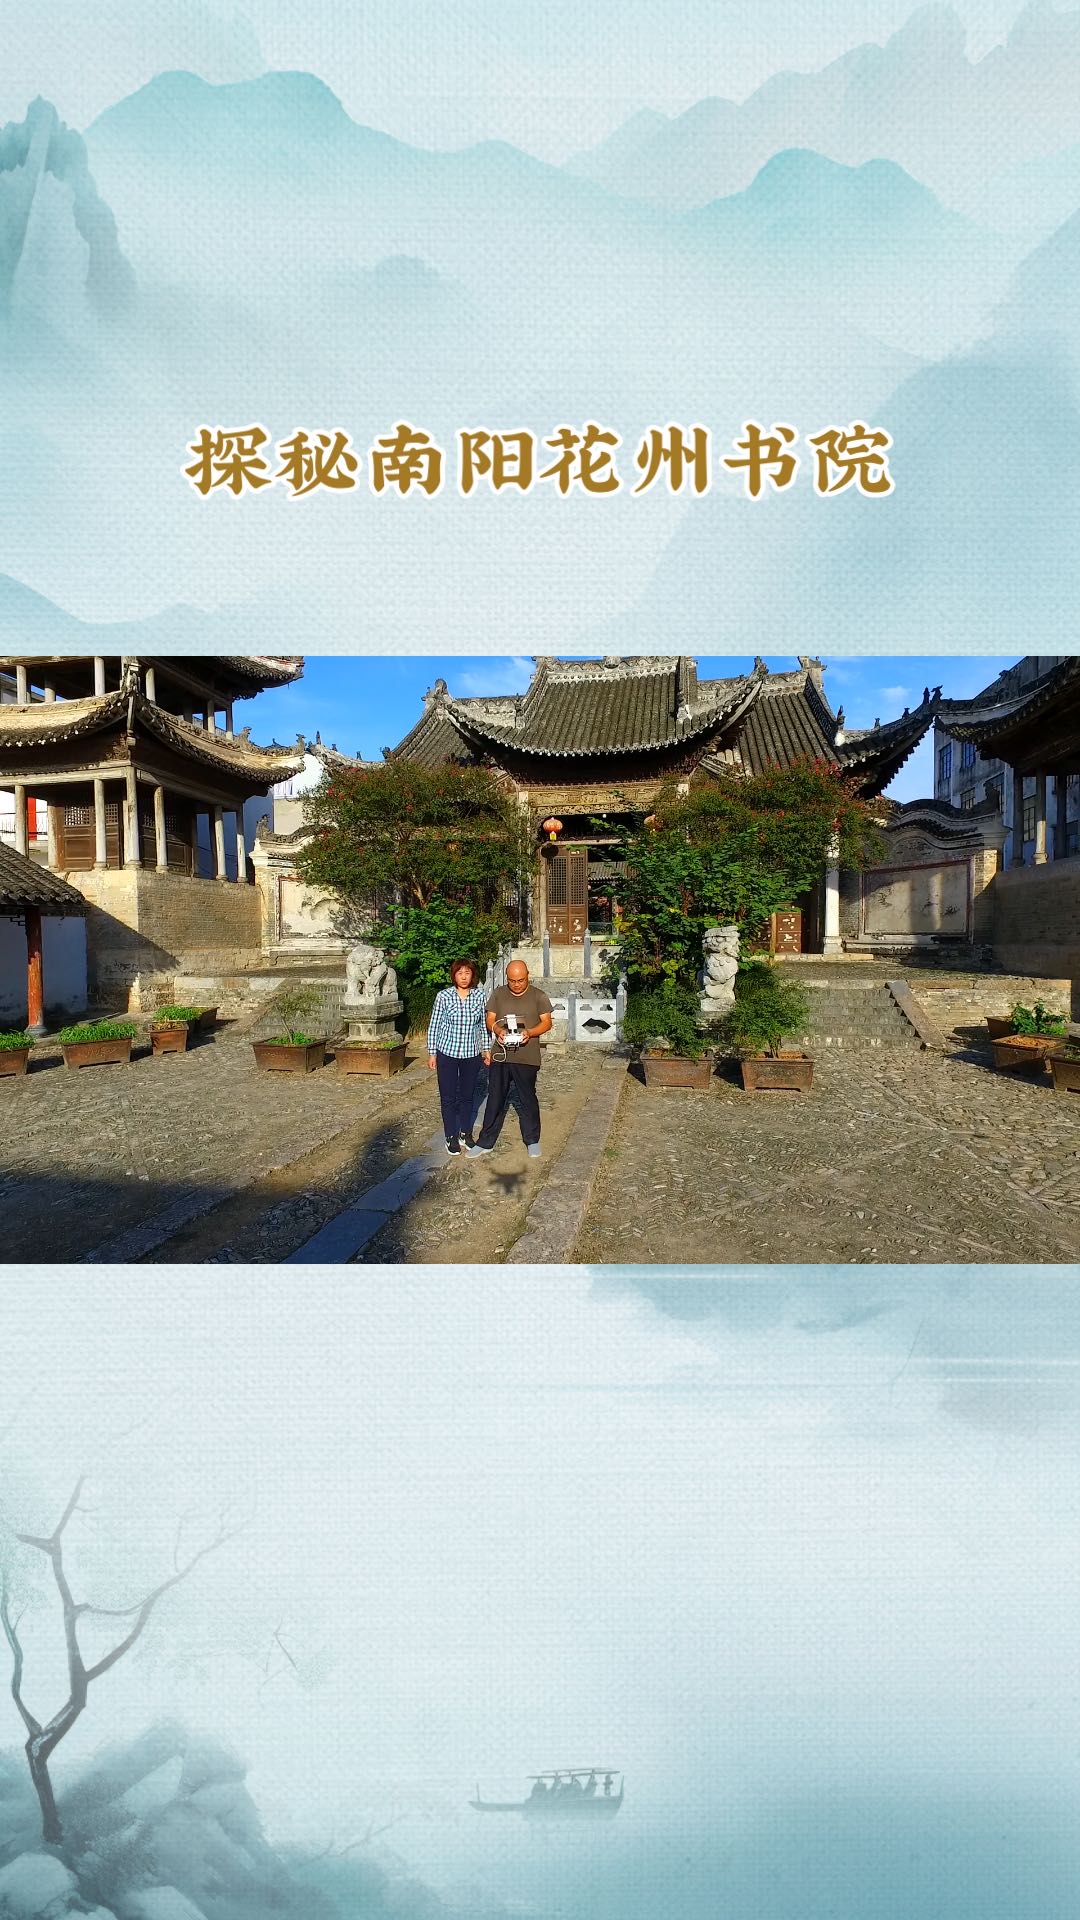 标题：探秘南阳花州书院：古韵今风的文化之旅  引言： 在中国悠久的历史长河中，书院作为古代教育的重要